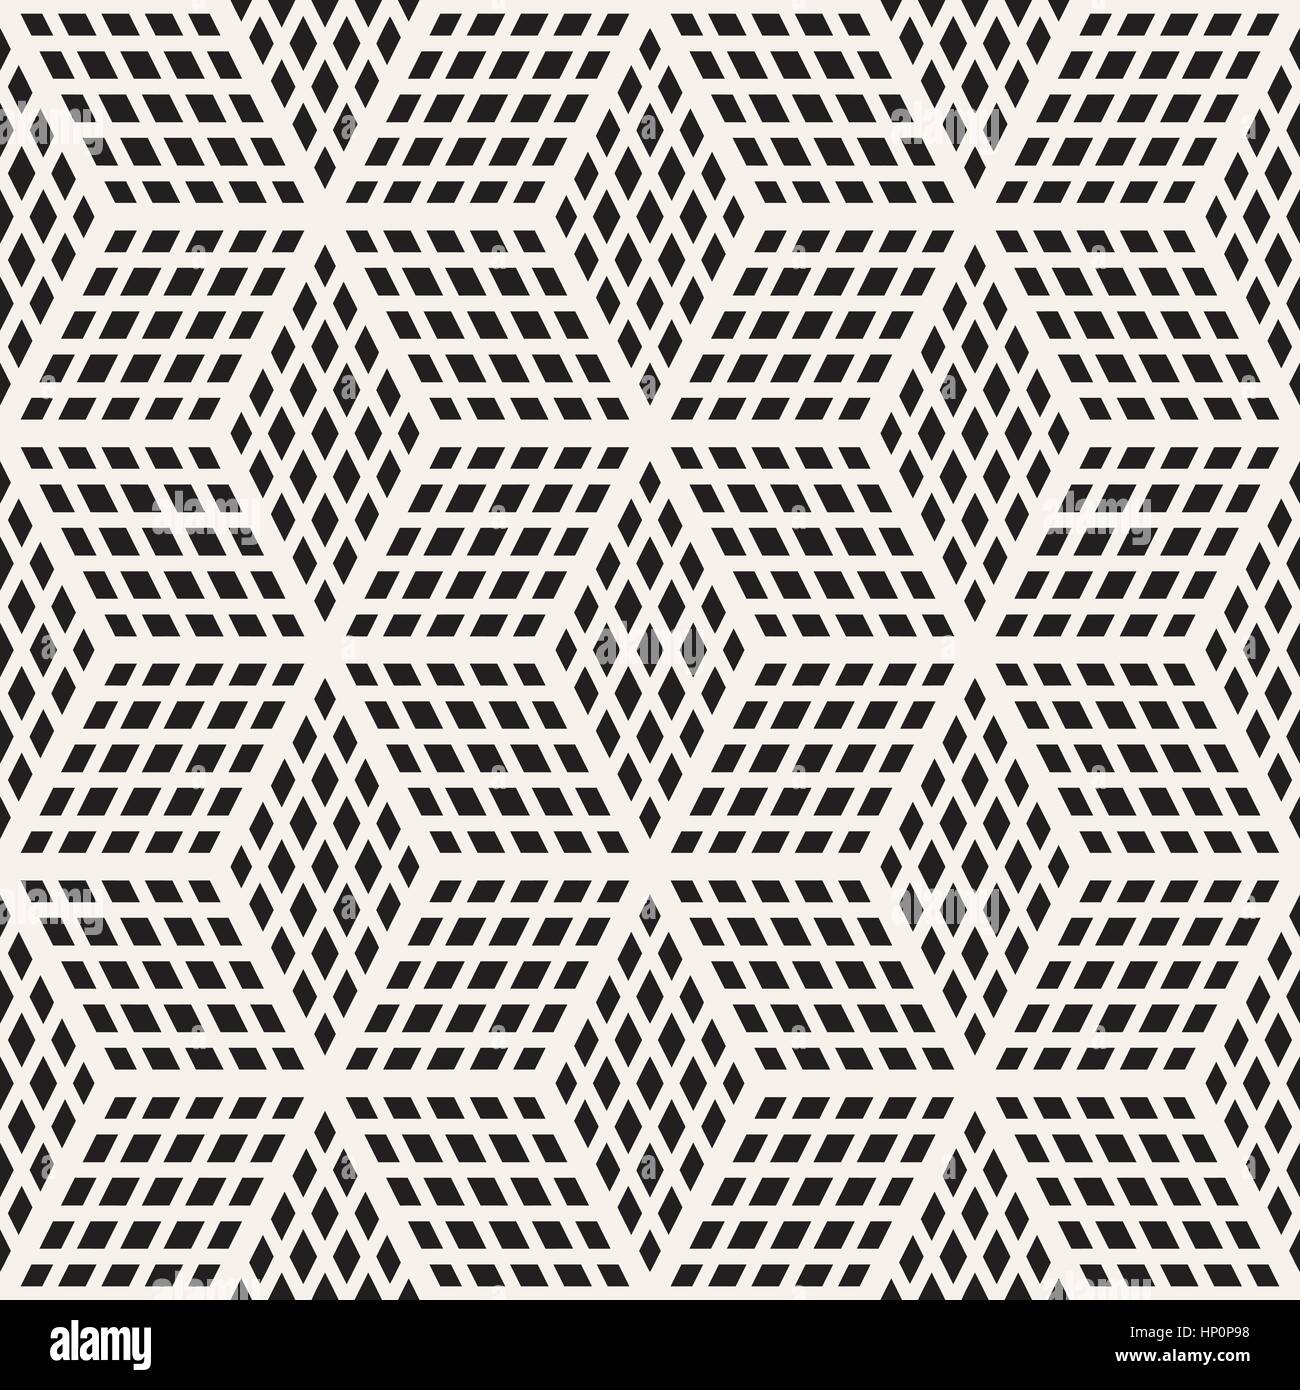 Grille de cubes carrelage élégant sans fin de texture. Seamless Vector motif en noir et blanc Illustration de Vecteur